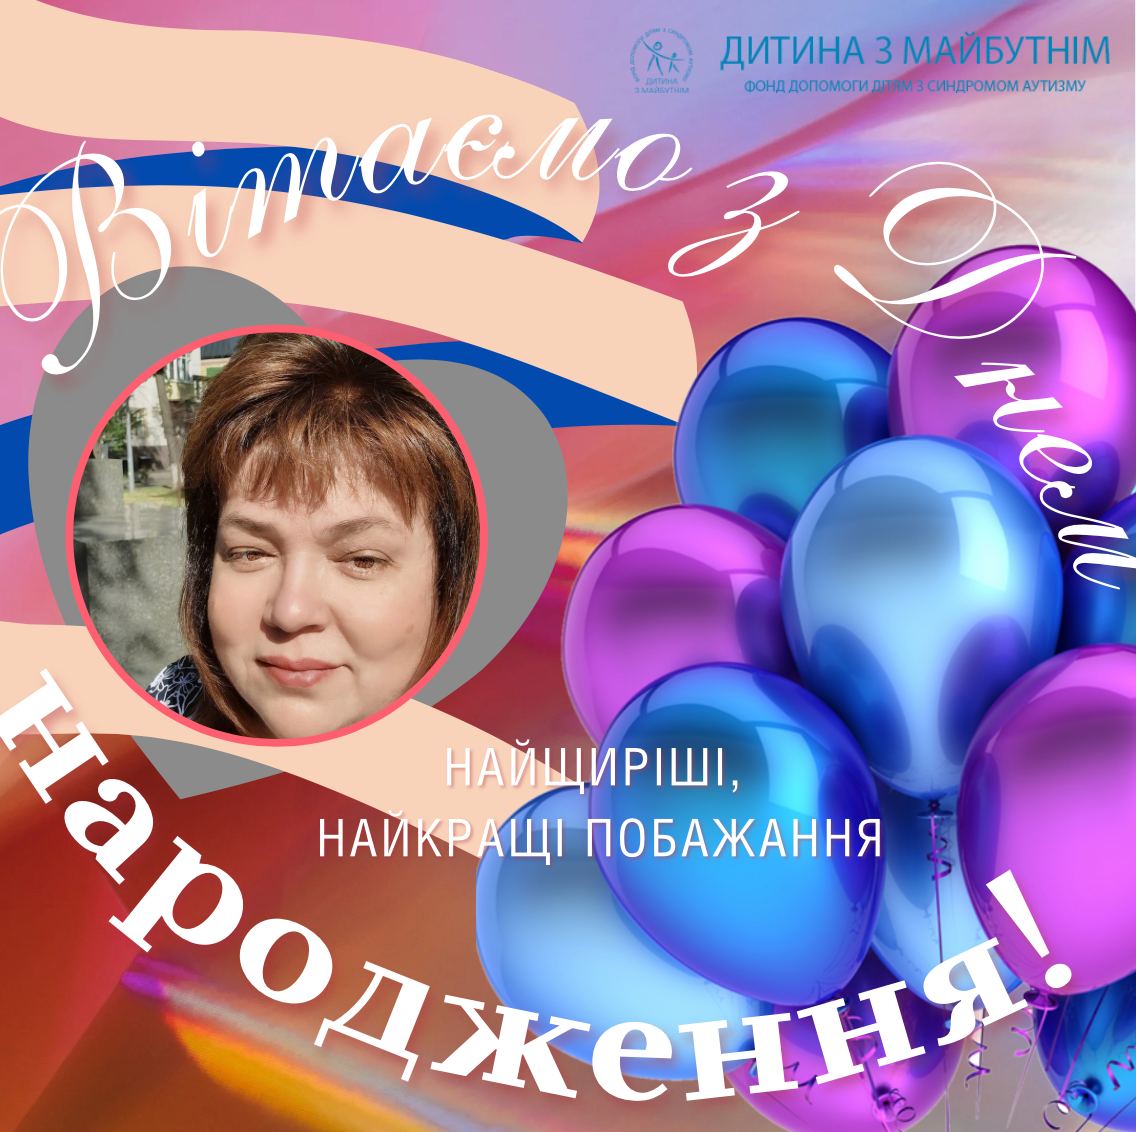 Інна Сергієнко, засновниця МГО “Дитина з майбутнім та консул “Аутизм Європа” сьогодні святкує День народження